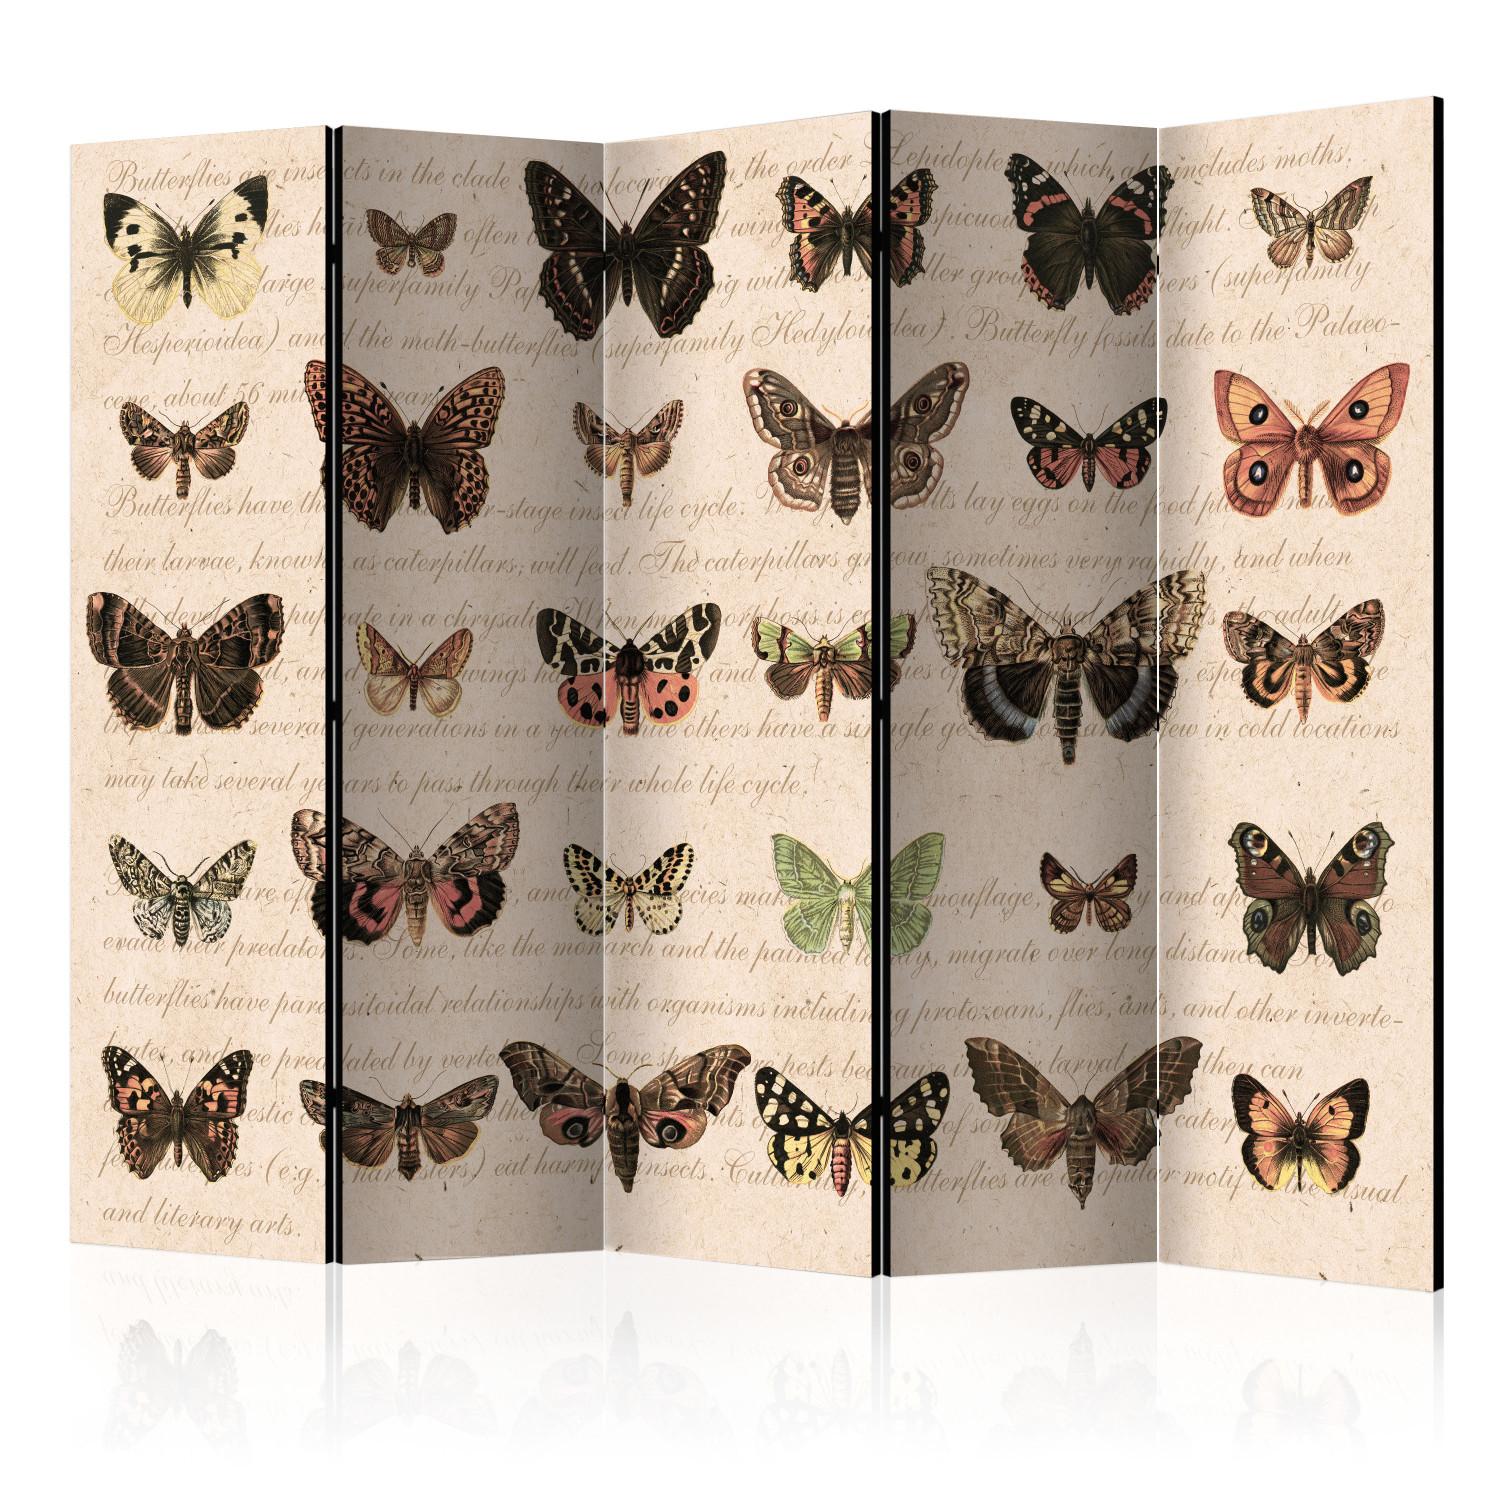 Biombo original Retro Style: Butterflies II [Room Dividers]